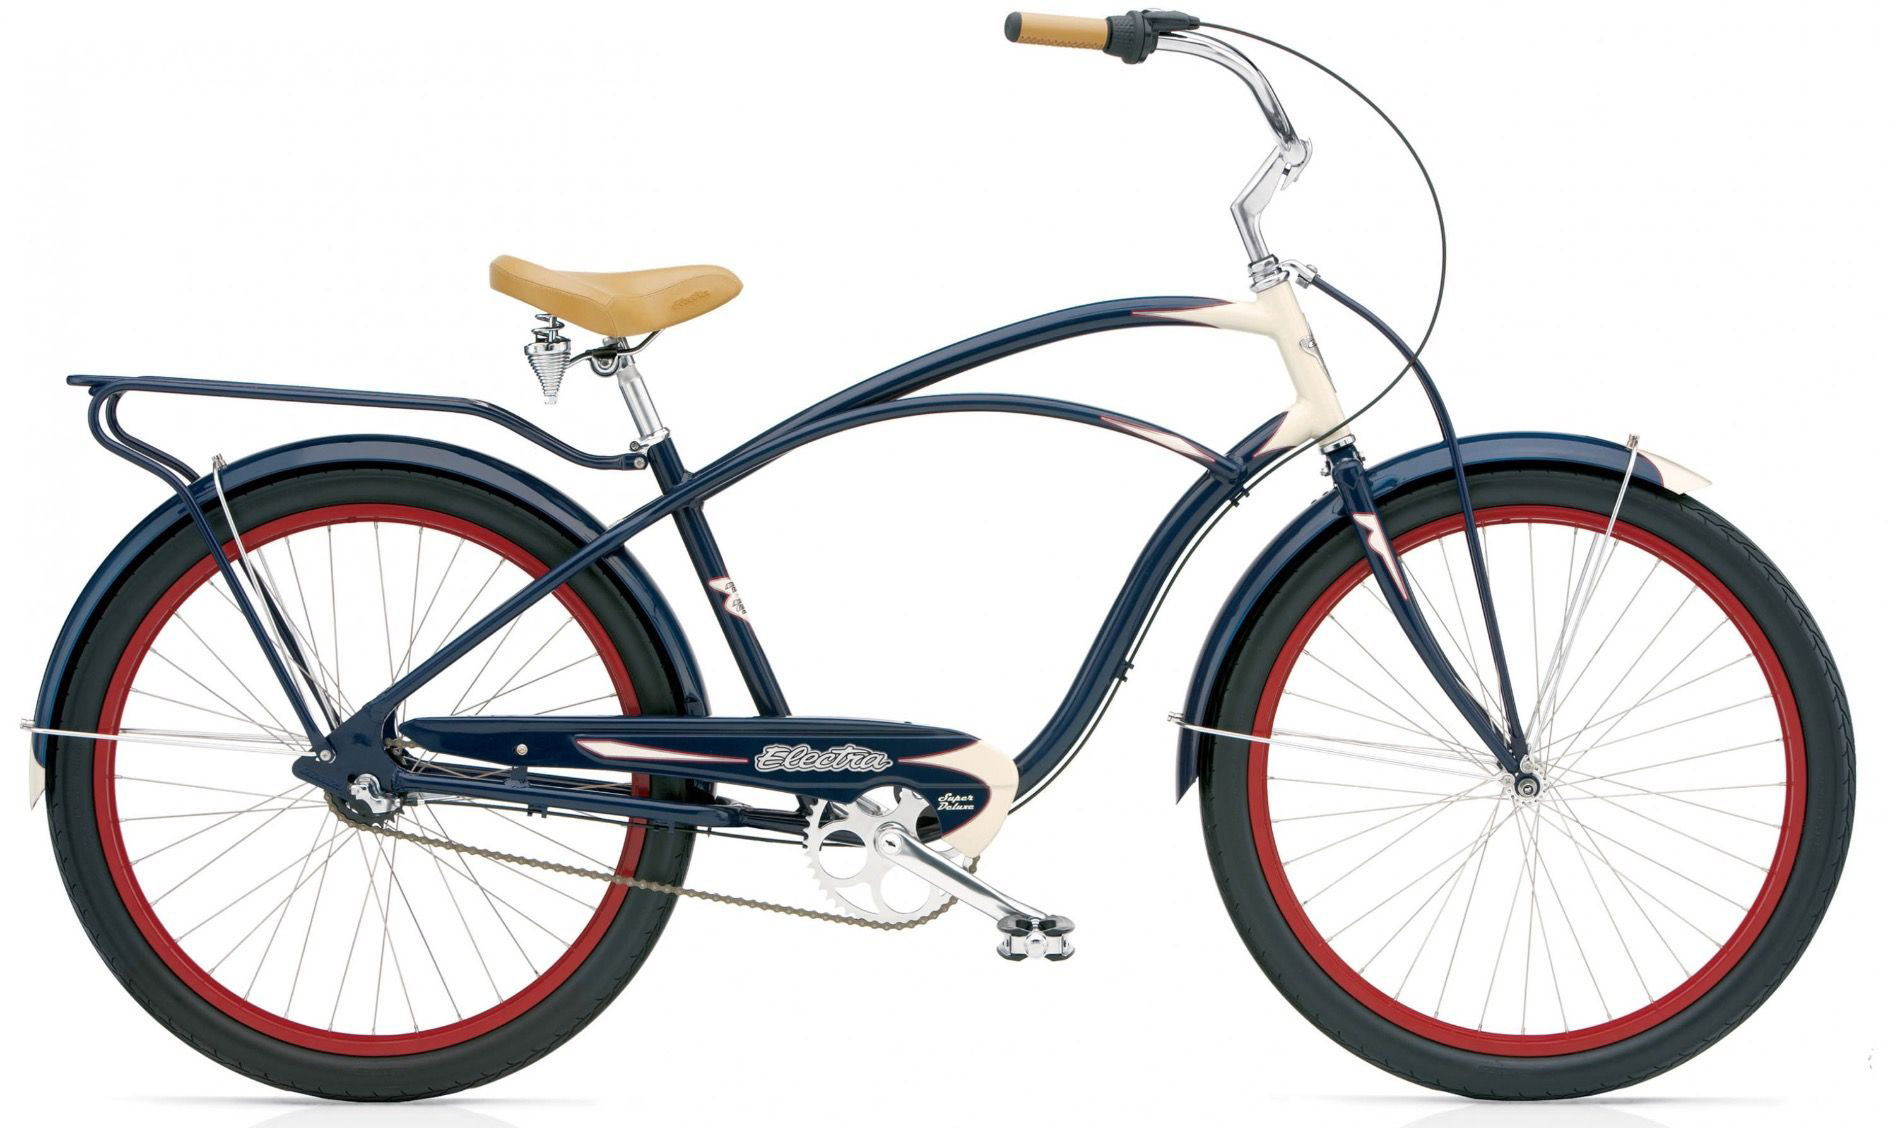  Отзывы о Городском велосипеде Electra Cruiser Super Deluxe 3i 2020